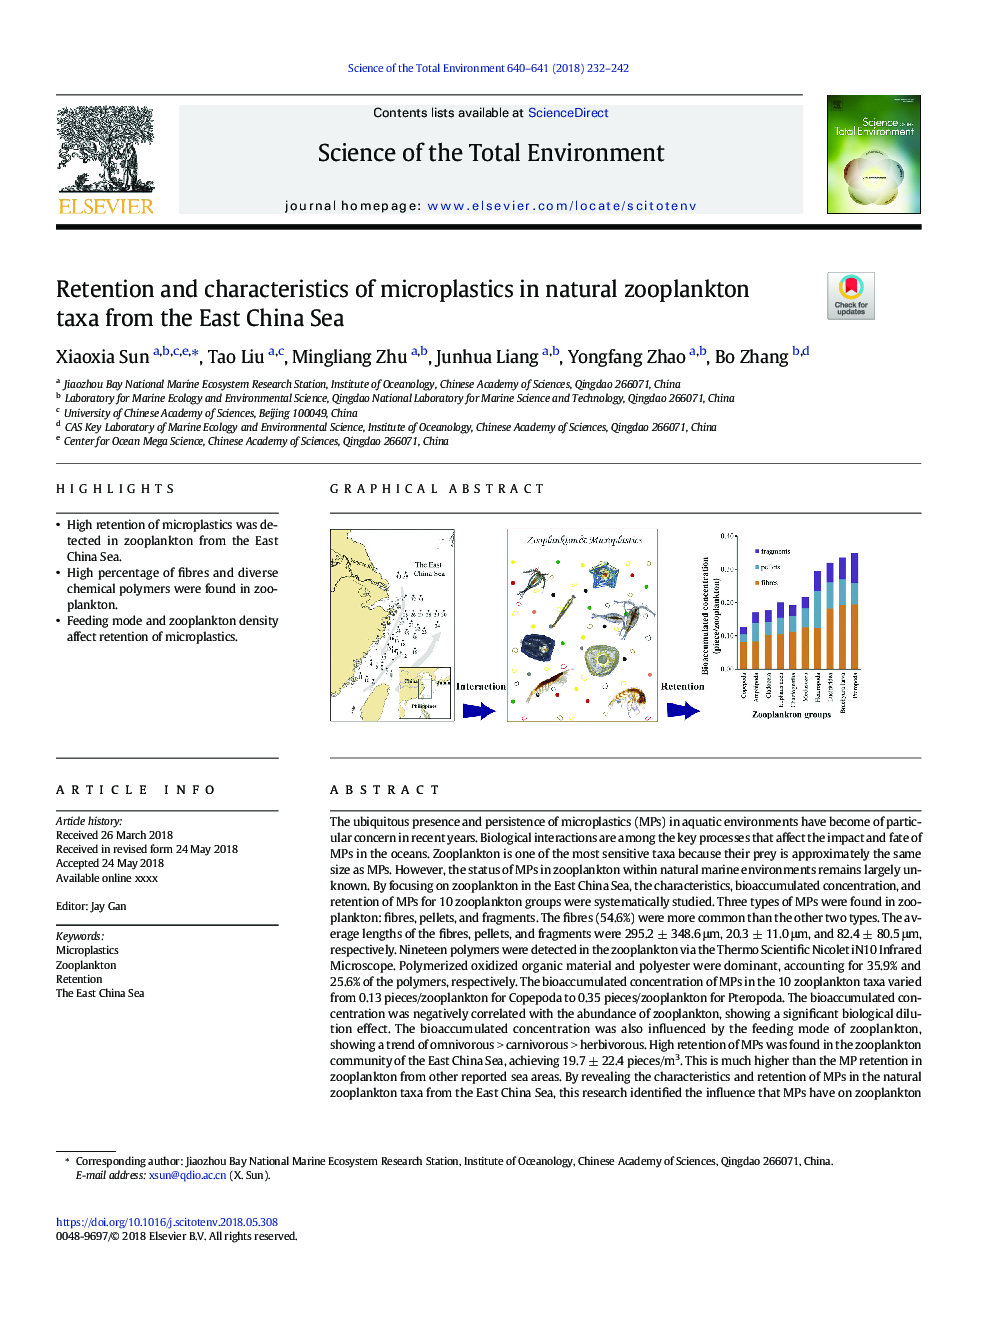 حفظ و ویژگی های میکروپلاستی در تاکسون های طبیعی زئوپلانکتون از دریای چین شرقی 